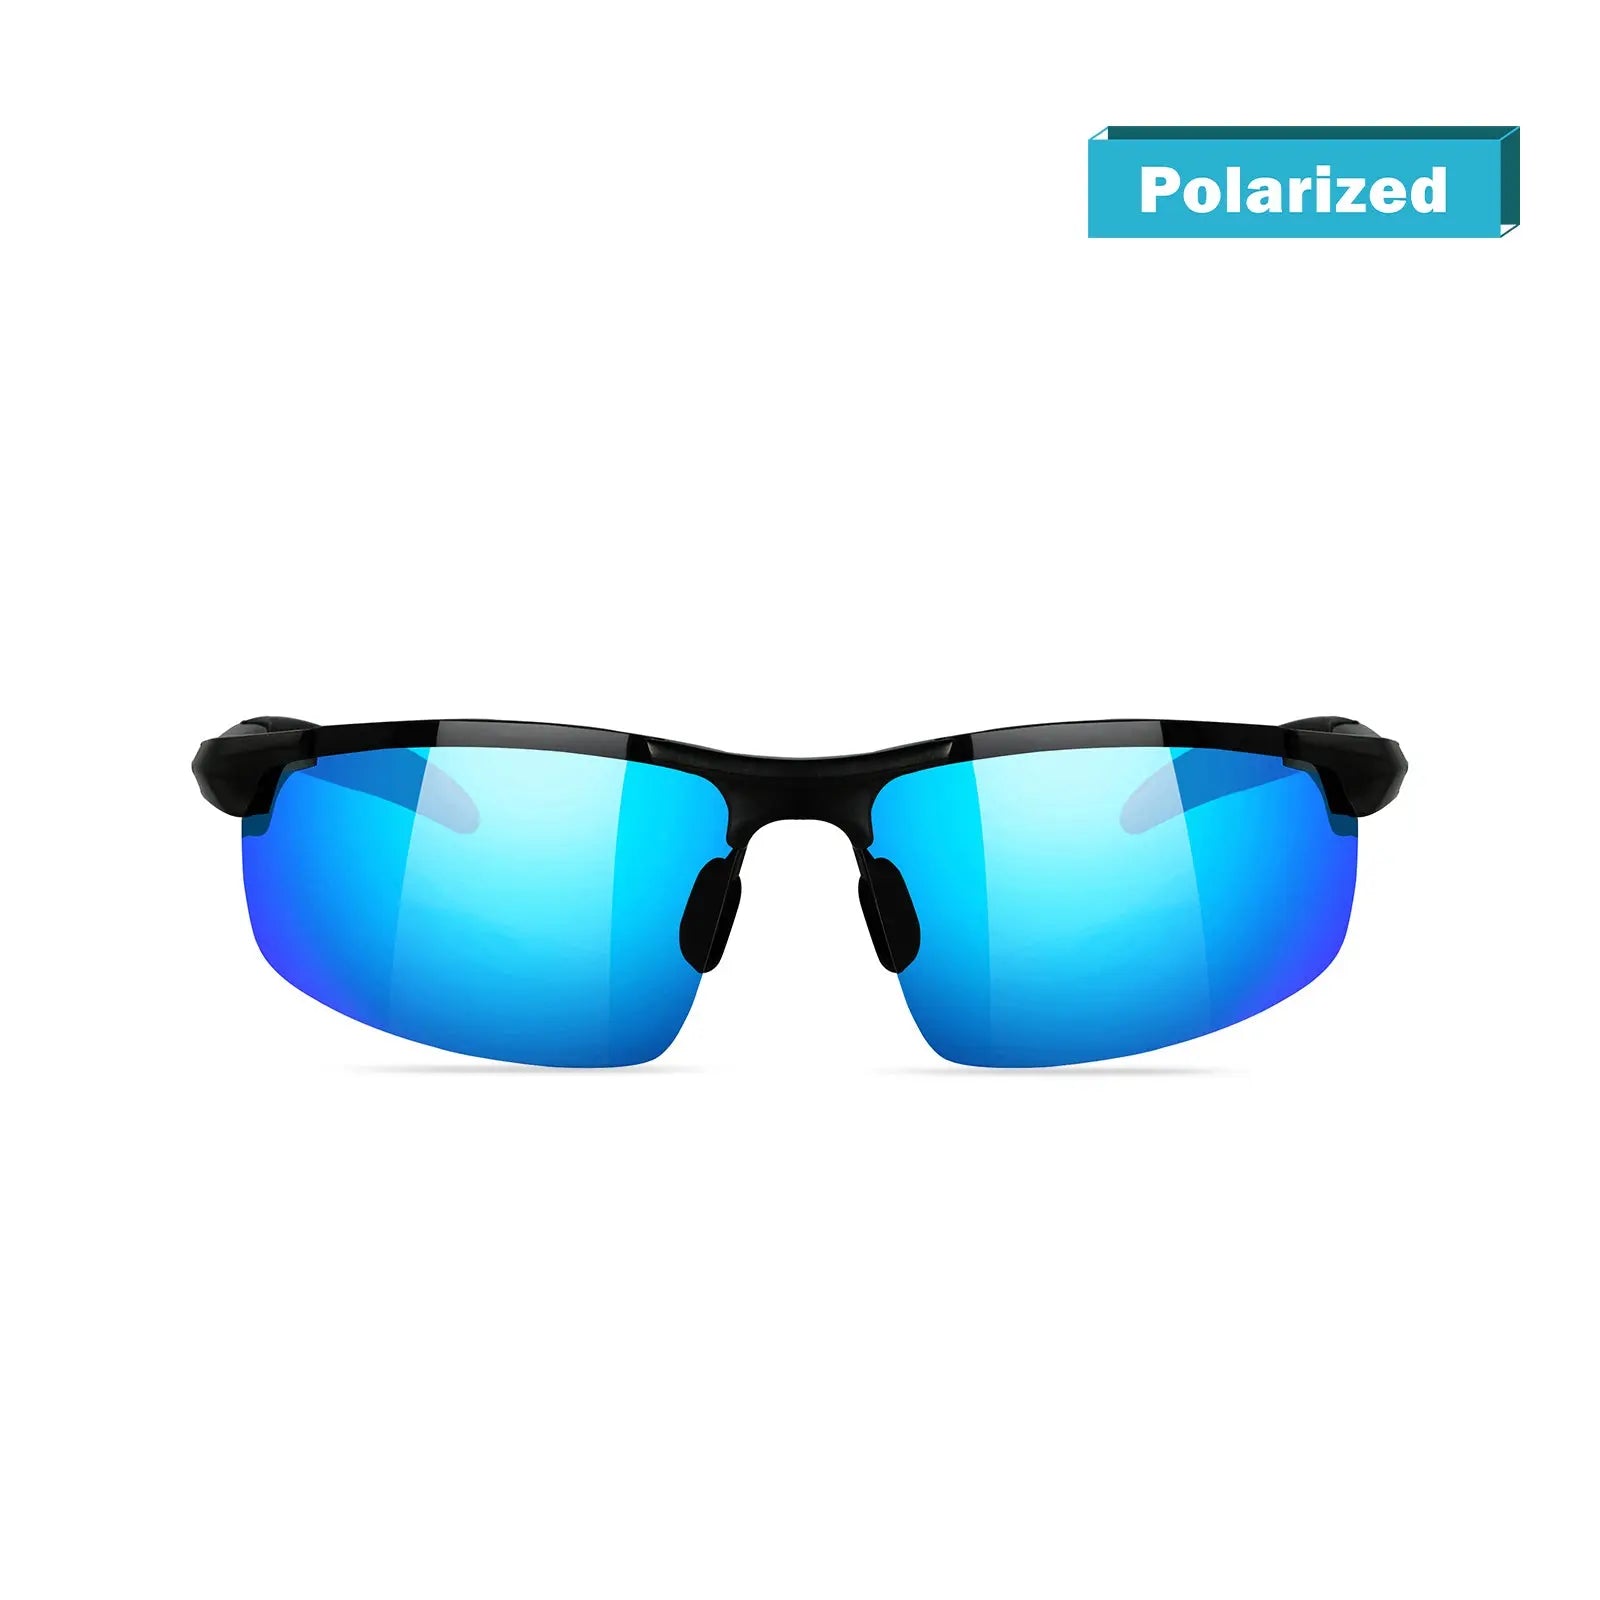 Duco Men's Polarized Sunglasses for Fishing Driving 8177s, Black Frame Green Lens